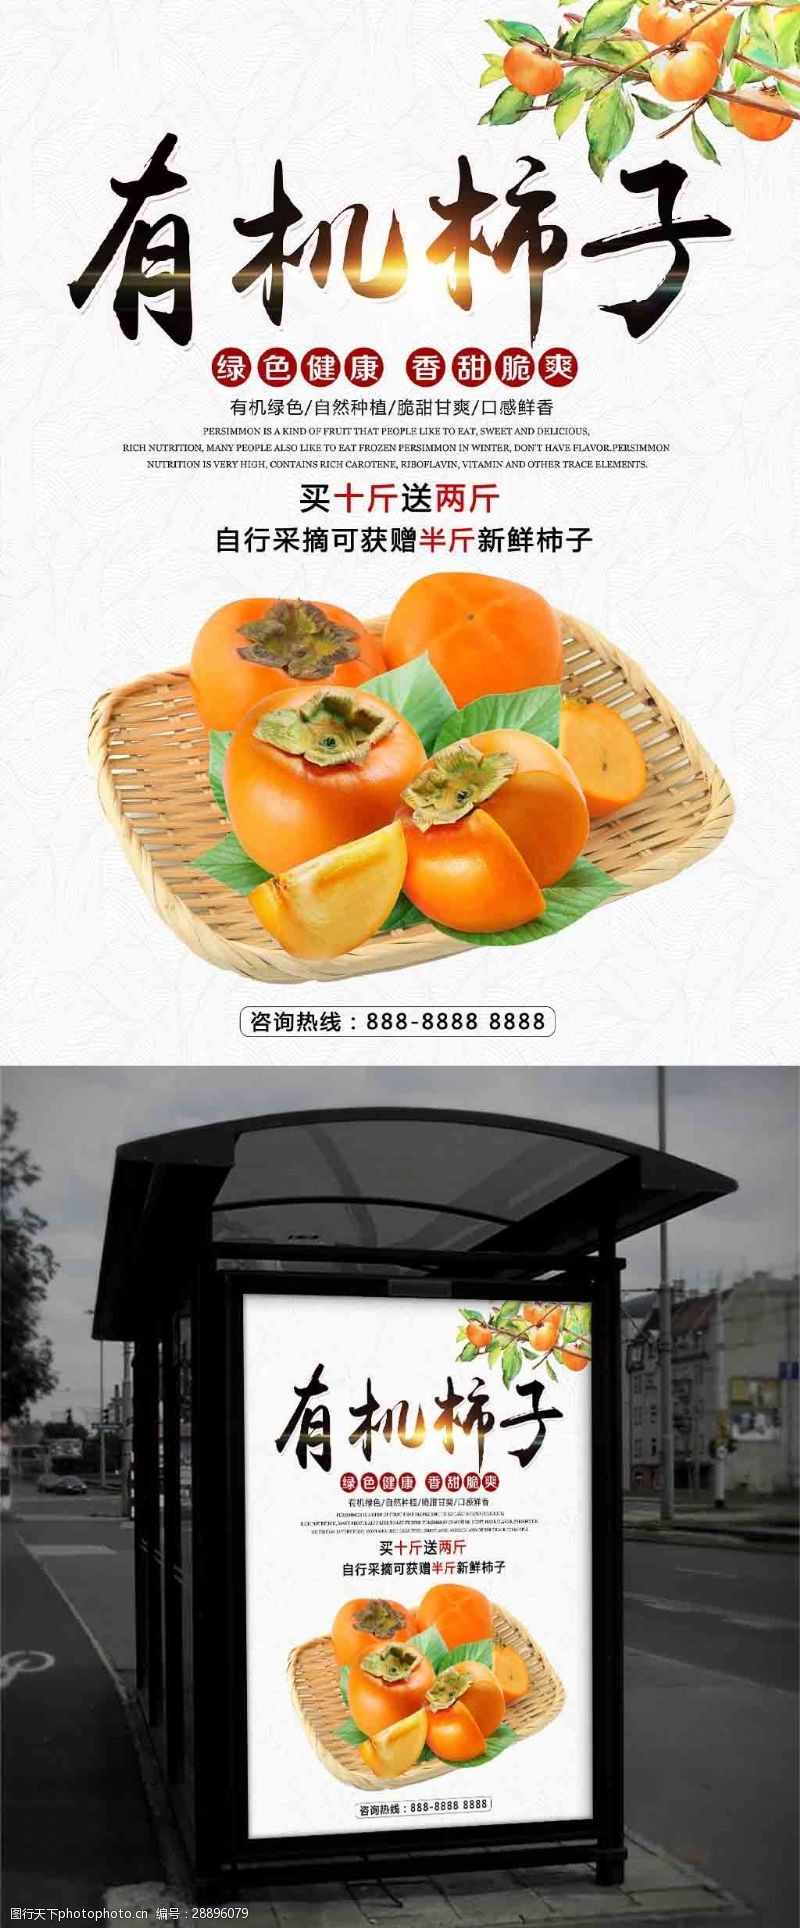 好水果秋季水果新鲜有机柿子促销宣传海报